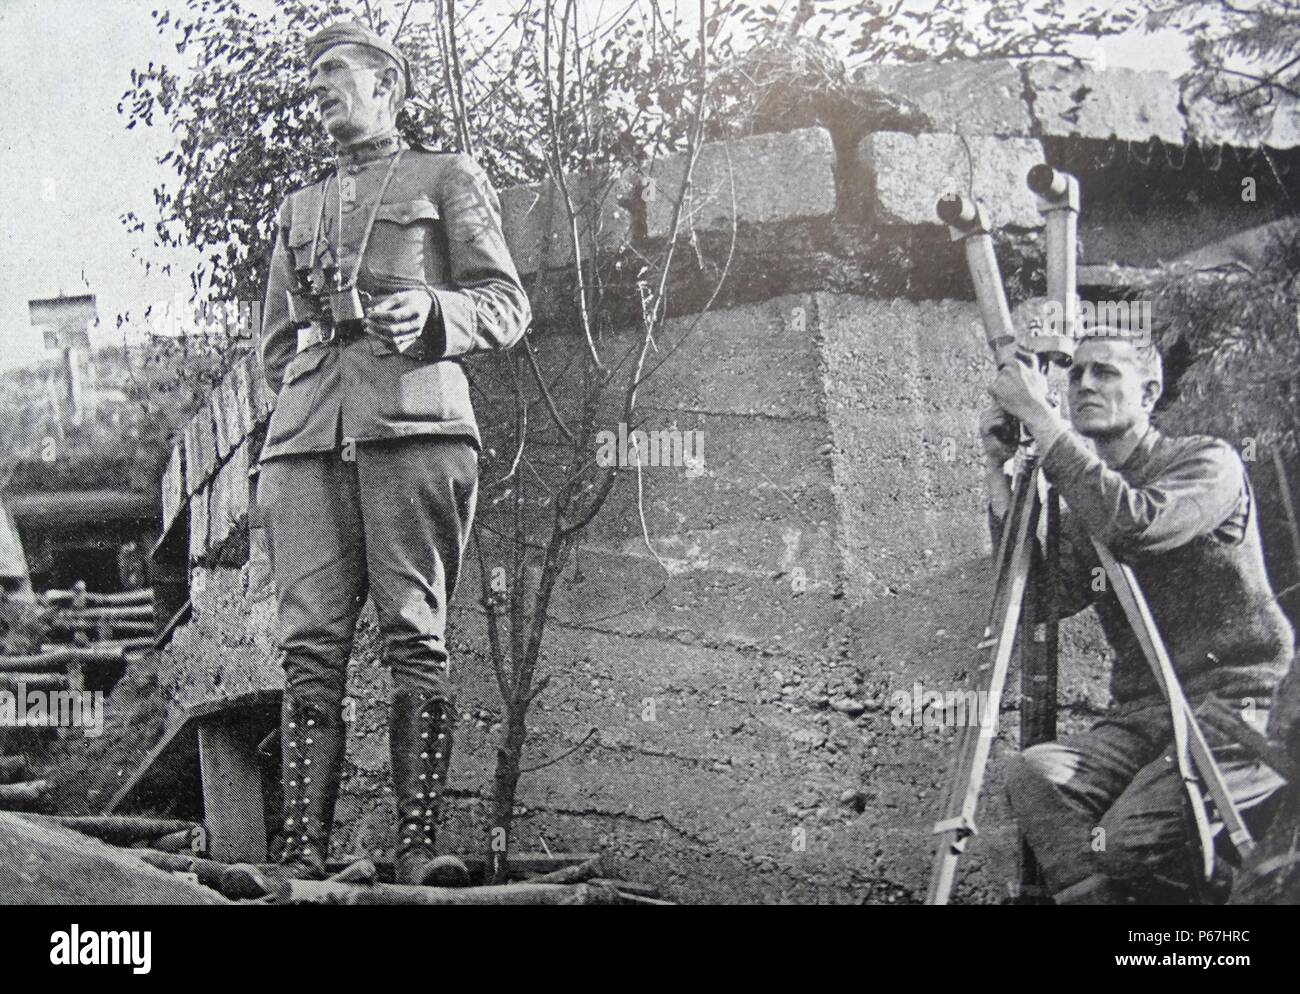 American osservatori militari Usa un abbandonata la posizione tedesca a Montsec, Francia durante la Prima Guerra Mondiale 1918 Foto Stock